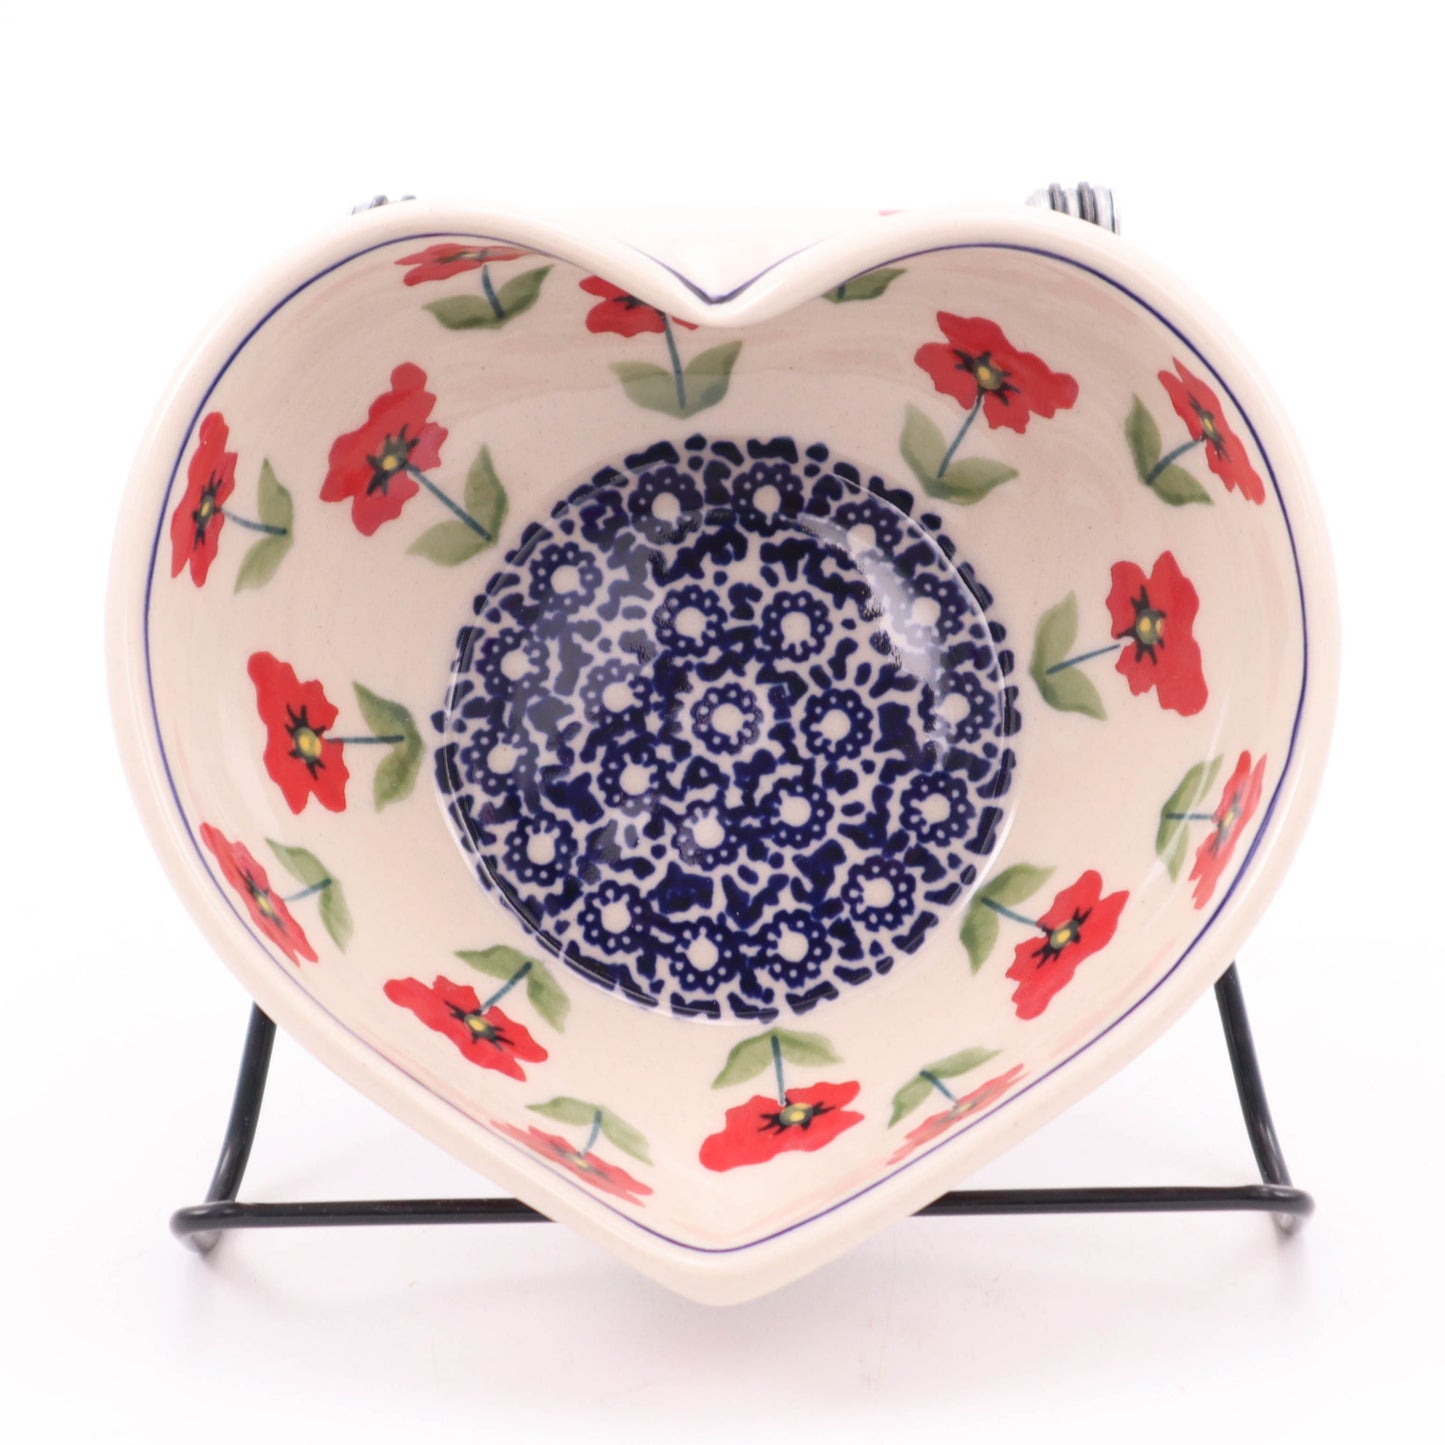 5"x6" Heart Bowl. Pattern: Perky Poppy